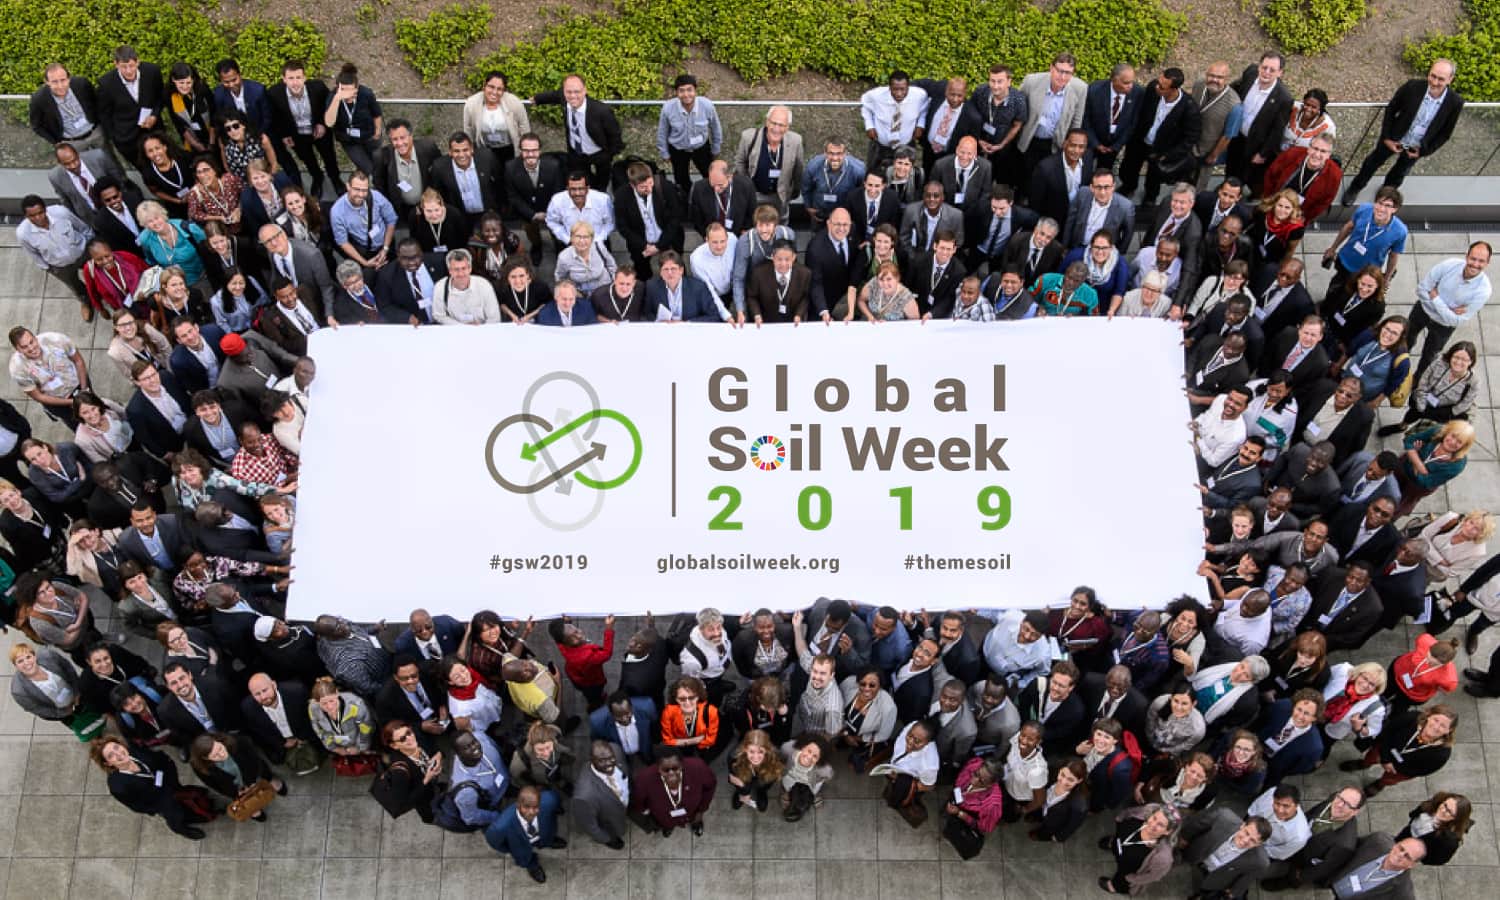 第五届全球土壤星期召集了200多名专家、决策者和公民社会的代表,讨论投资于土地可持续管理的紧迫性。